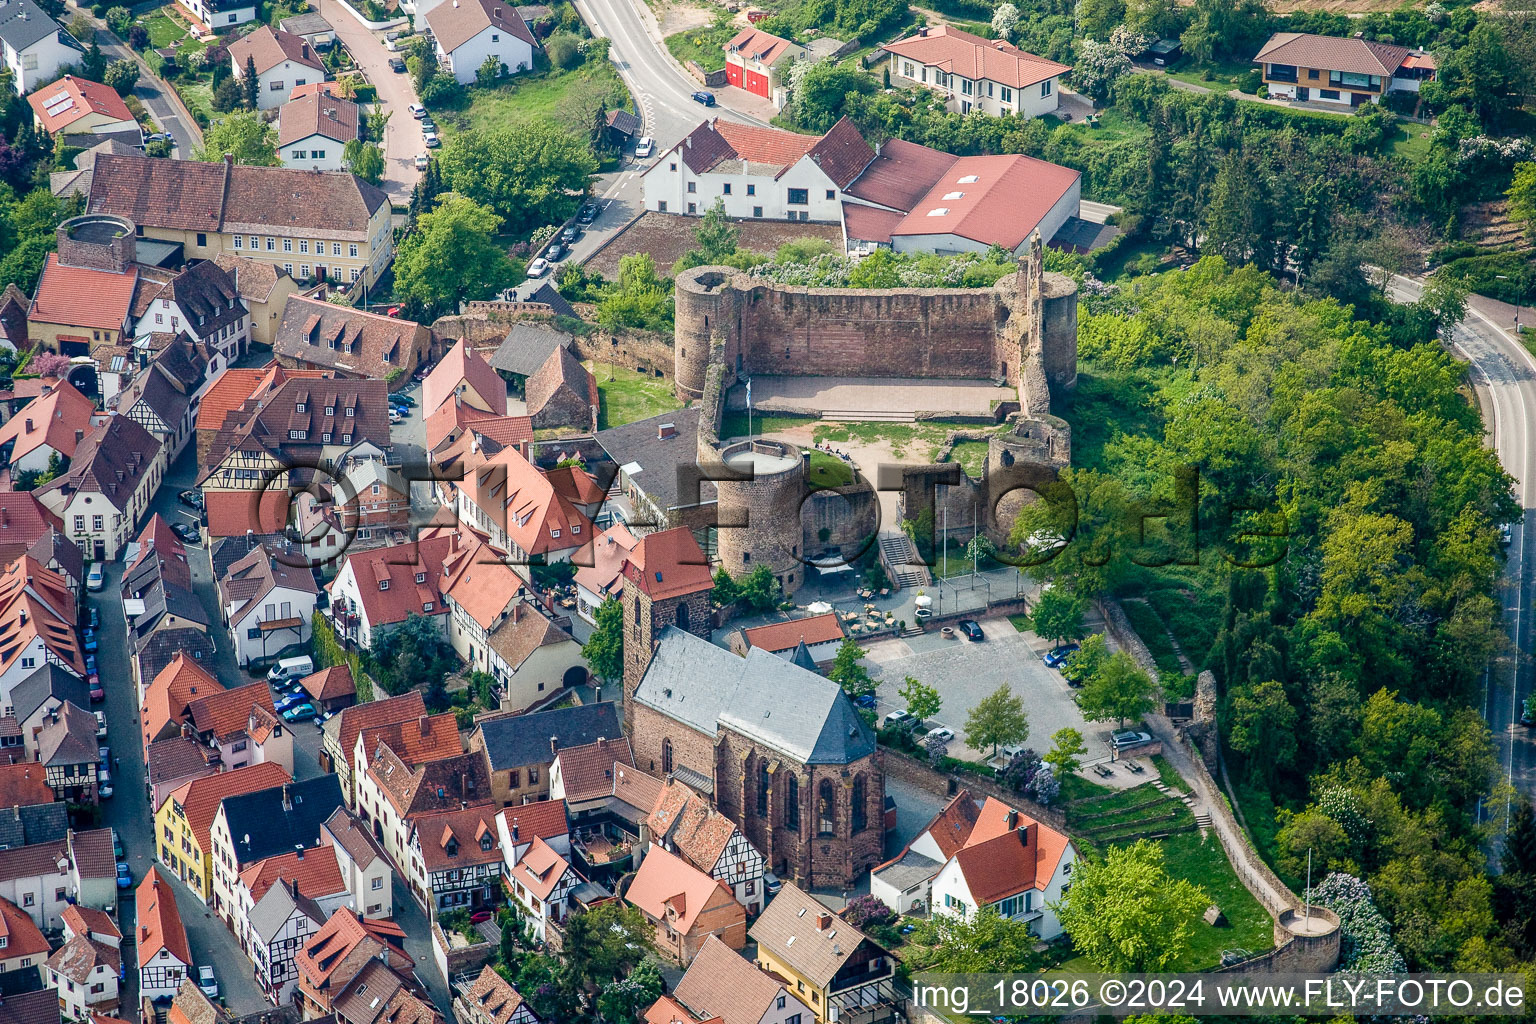 Luftbild von Ruine und Mauerreste der ehemaligen Burganlage und Feste Neuleiningen in Neuleiningen im Bundesland Rheinland-Pfalz, Deutschland